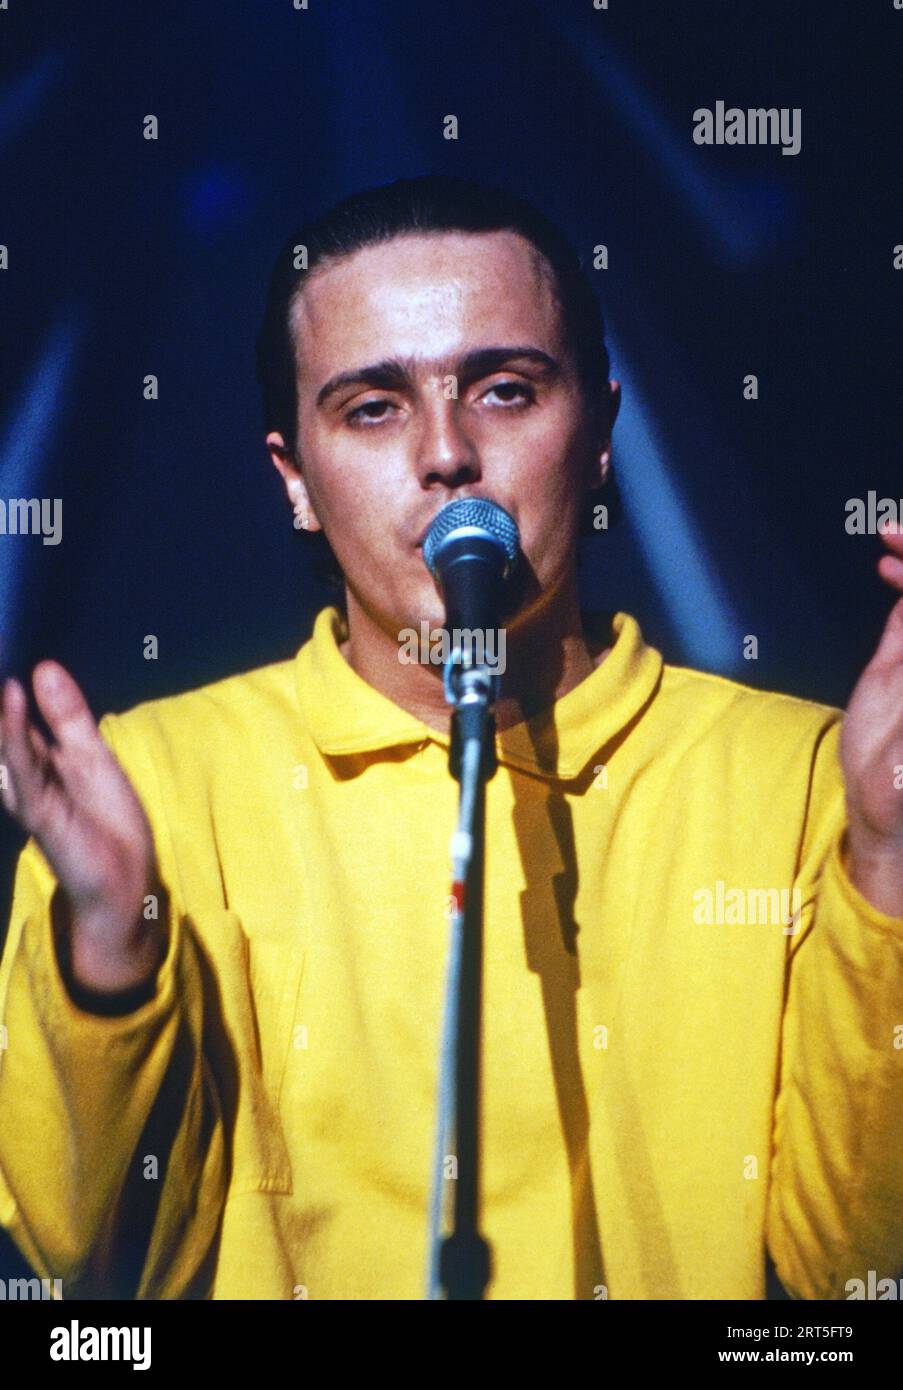 Sänger Curt Smith der britischen Synthiepop-Band 'Tears for Fears', bei einem Auftritt, Deutschland um 1986. Stock Photo